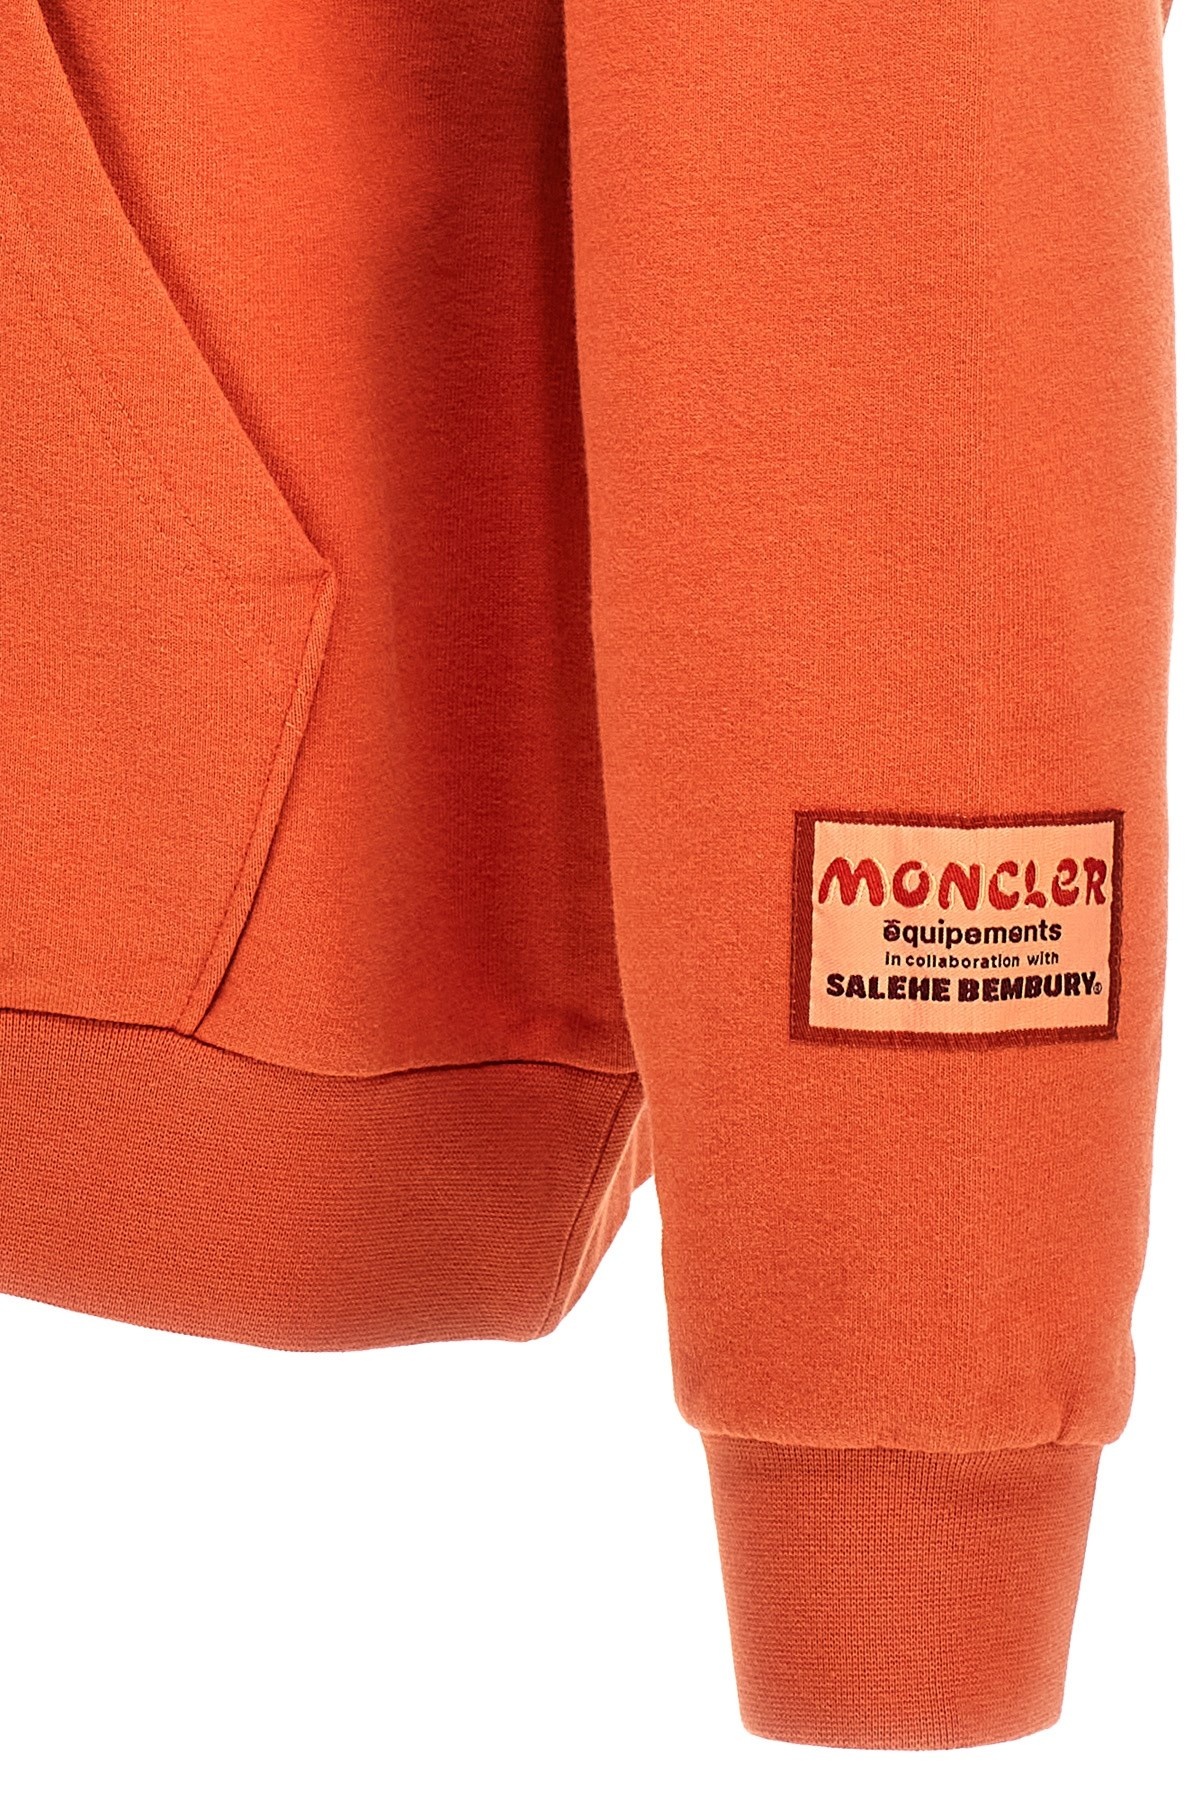 Moncler Genius Salehe Bembury hoodie - 4